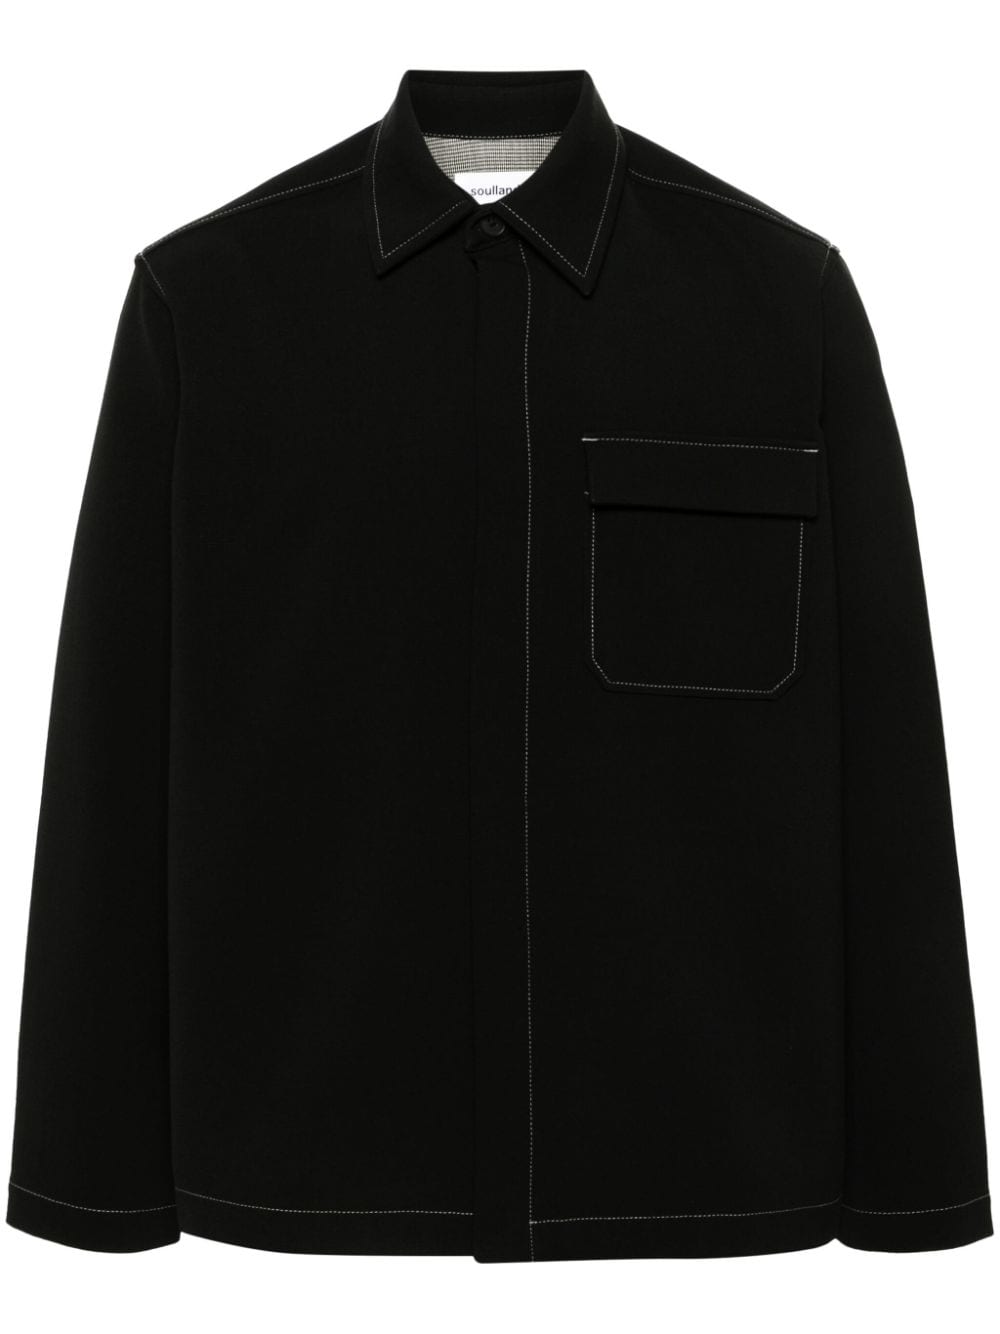 Soulland Rory Grain De Poudre 衬衫 In Black